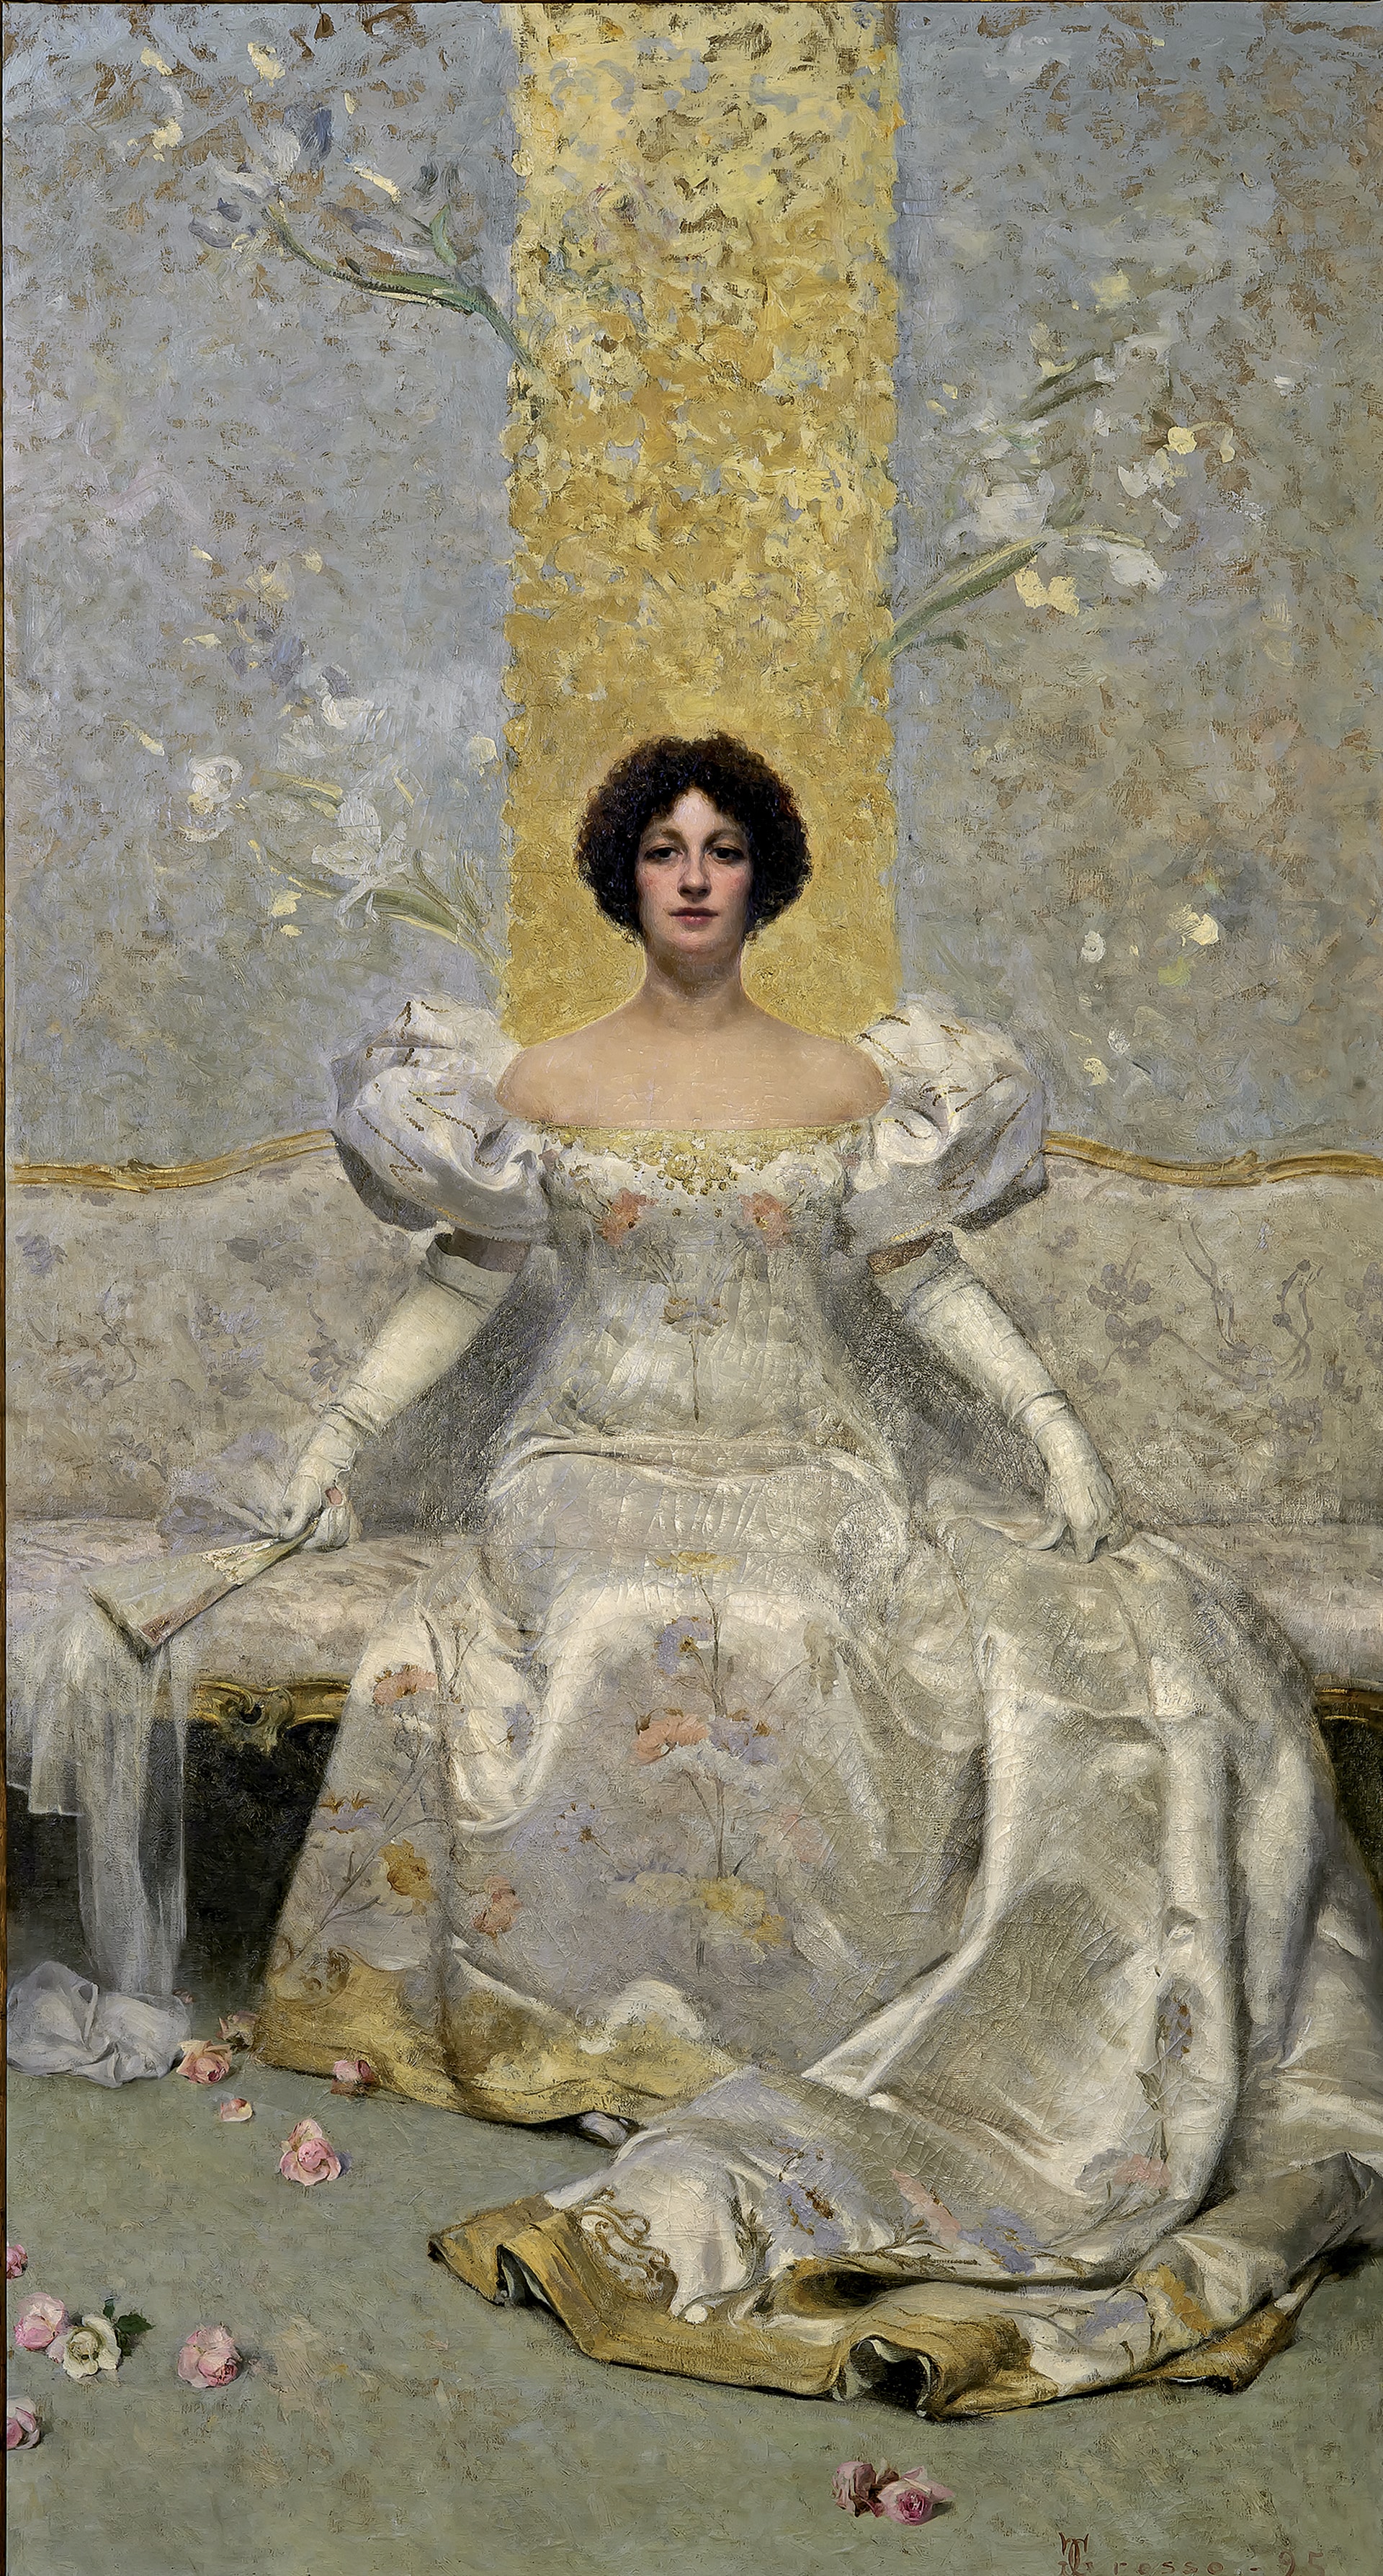 Giacomo Grosso "La femme", 1895. Olio su tela, 295 x 260 cm. Palazzo Mazzetti